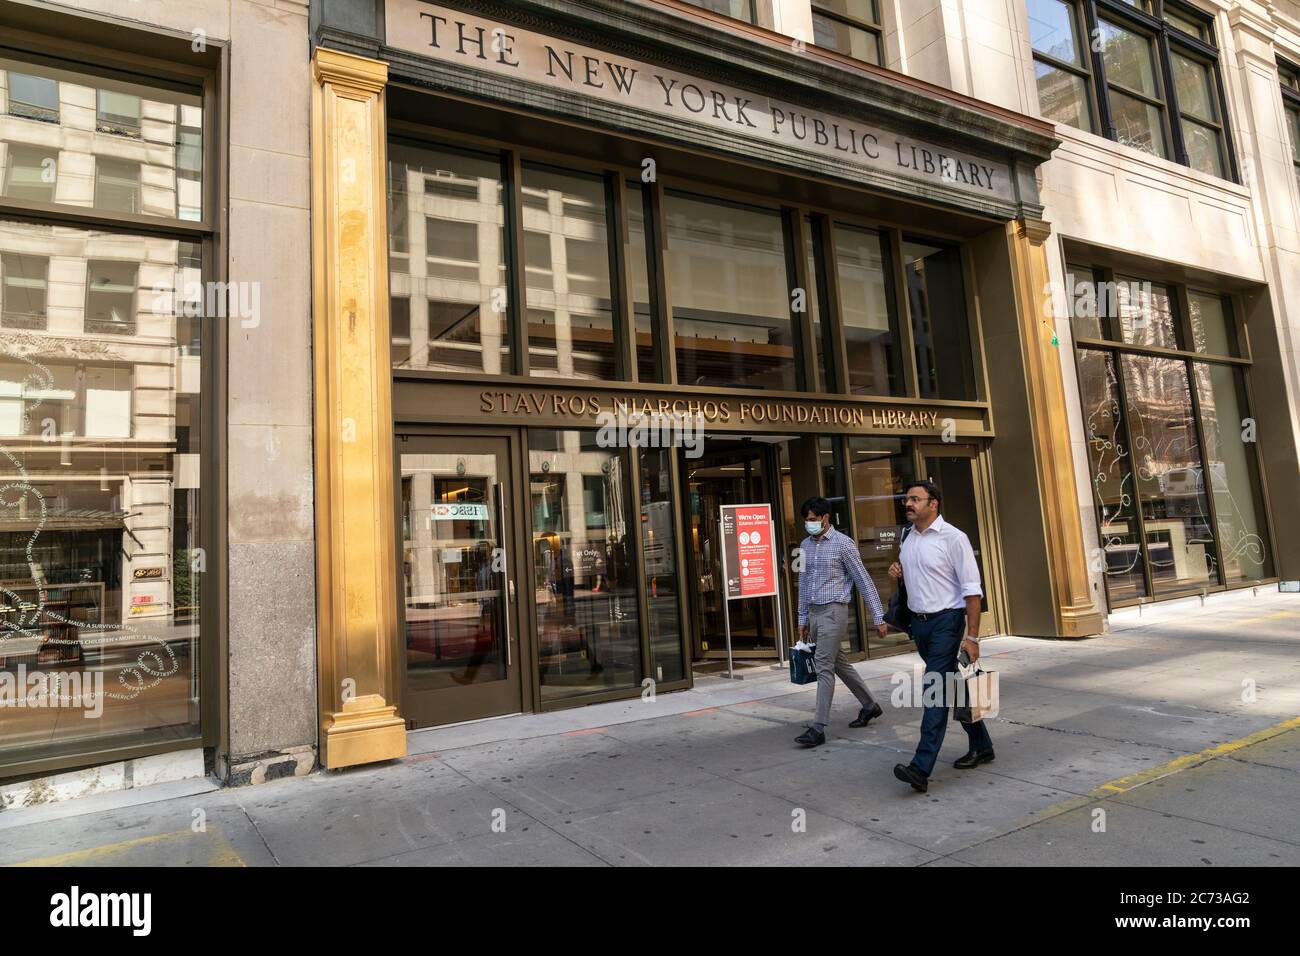 New York, NY - 13 juillet 2020 : extérieur de la bibliothèque de la Fondation Stavros Niarchos vu le 1er jour de l'ouverture après la fermeture de toutes les bibliothèques en raison de la pandémie de COVID-19 Banque D'Images